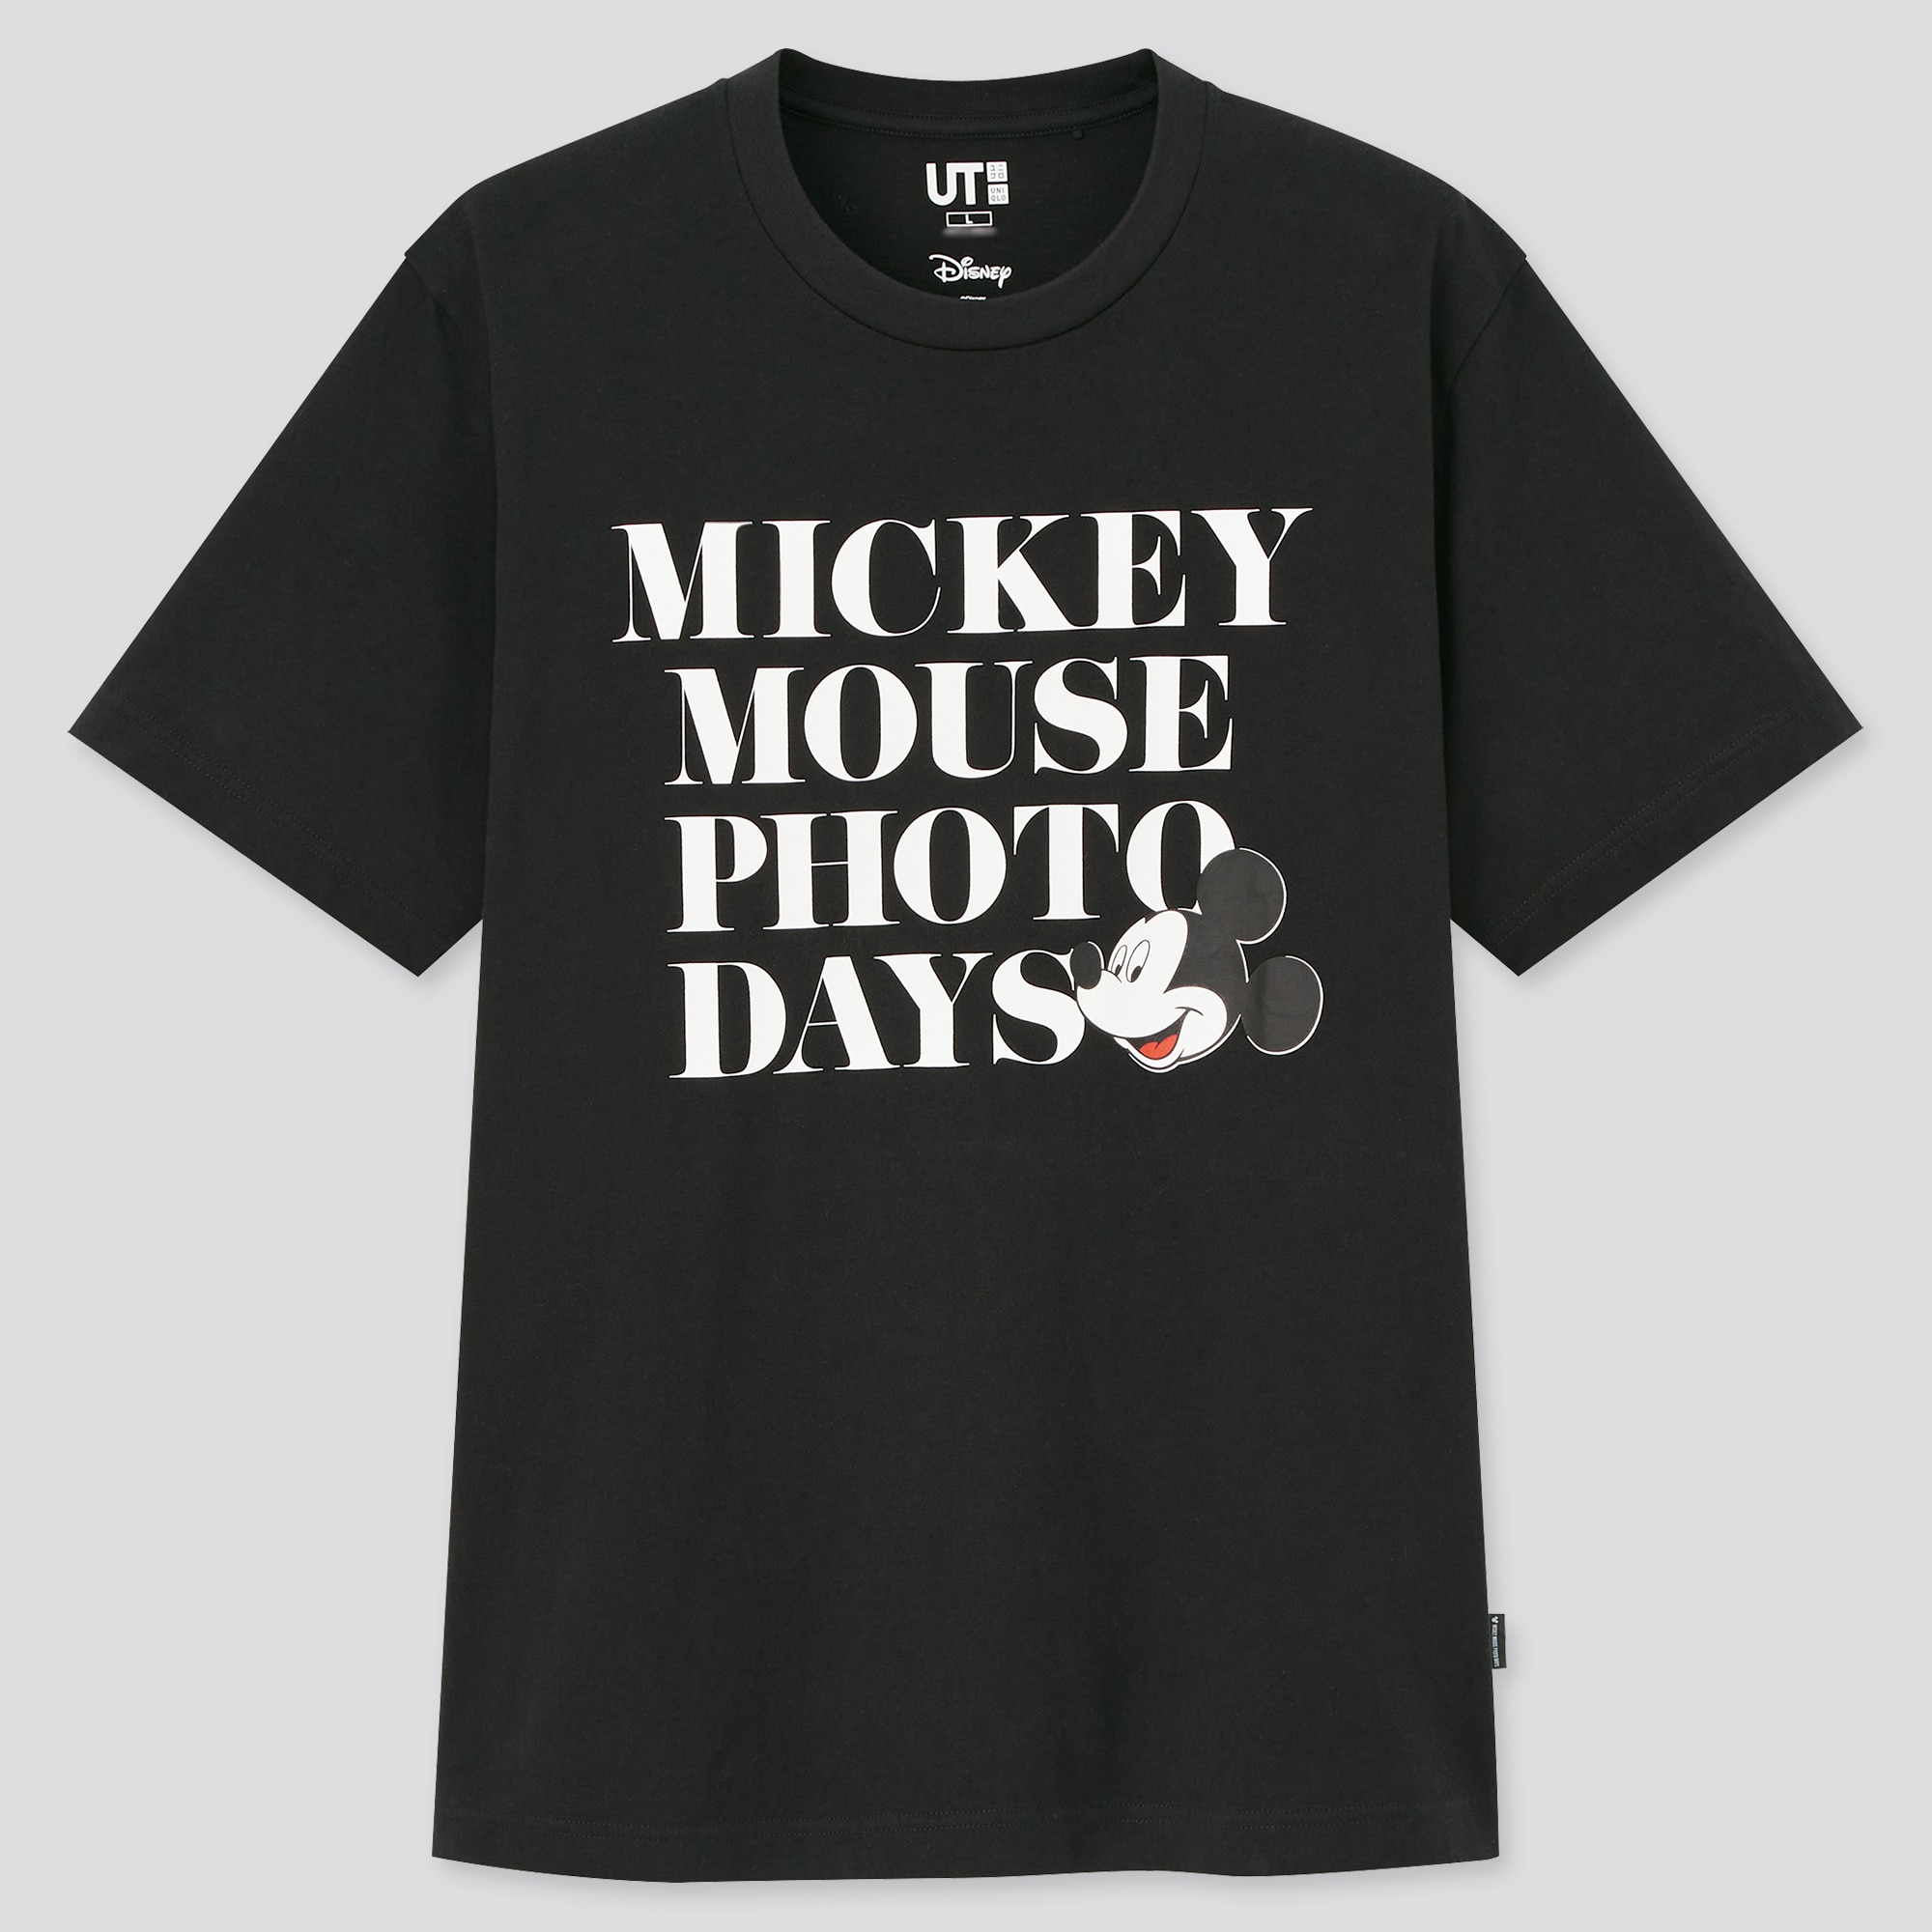 ユニクロ公式 | ミッキーマウス フォト デイズ UT グラフィックTシャツ 